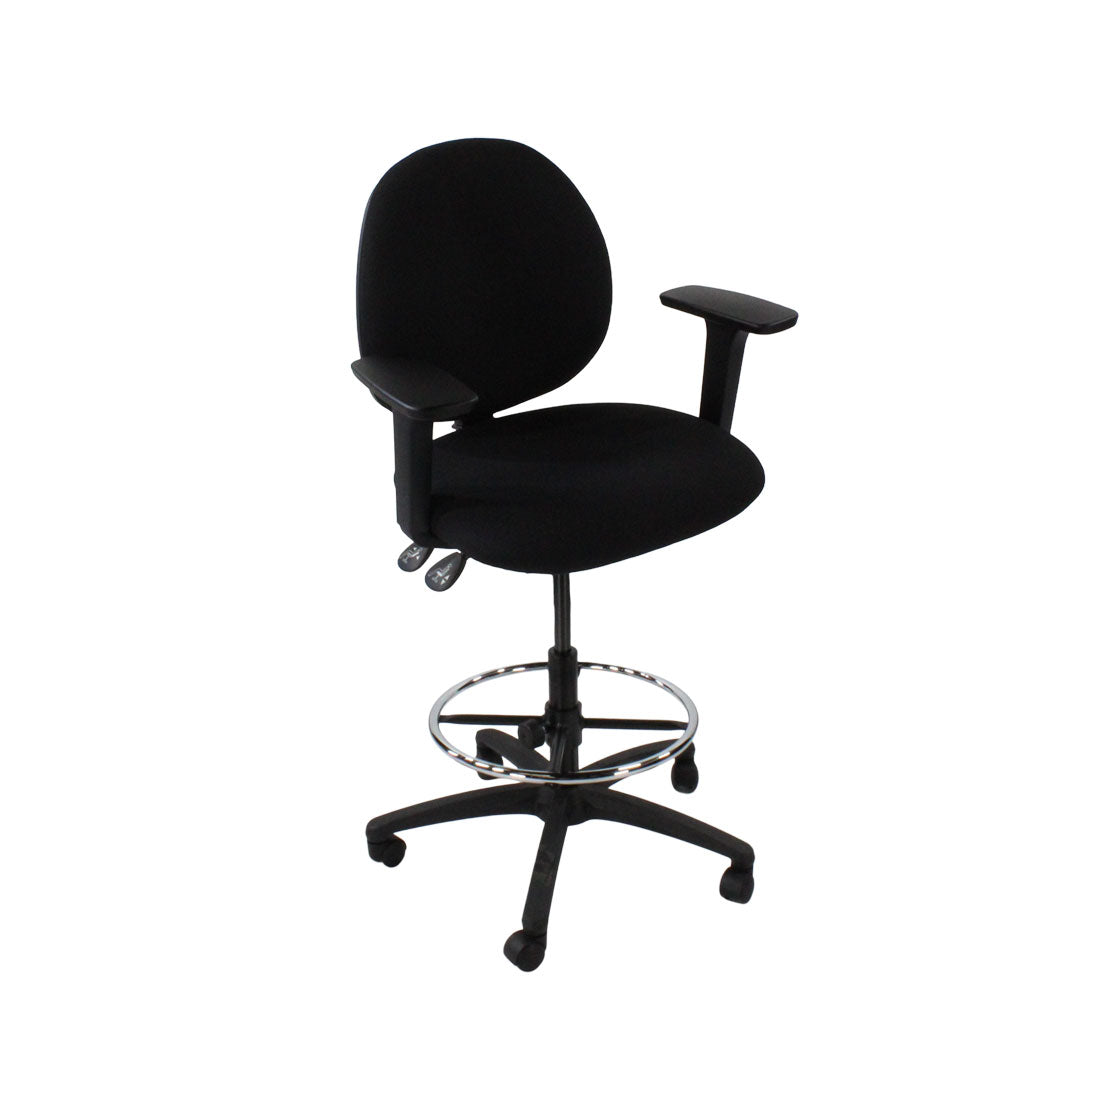 Inhaltsverzeichnis: Scoop Draftsman Chair aus schwarzem Stoff – generalüberholt